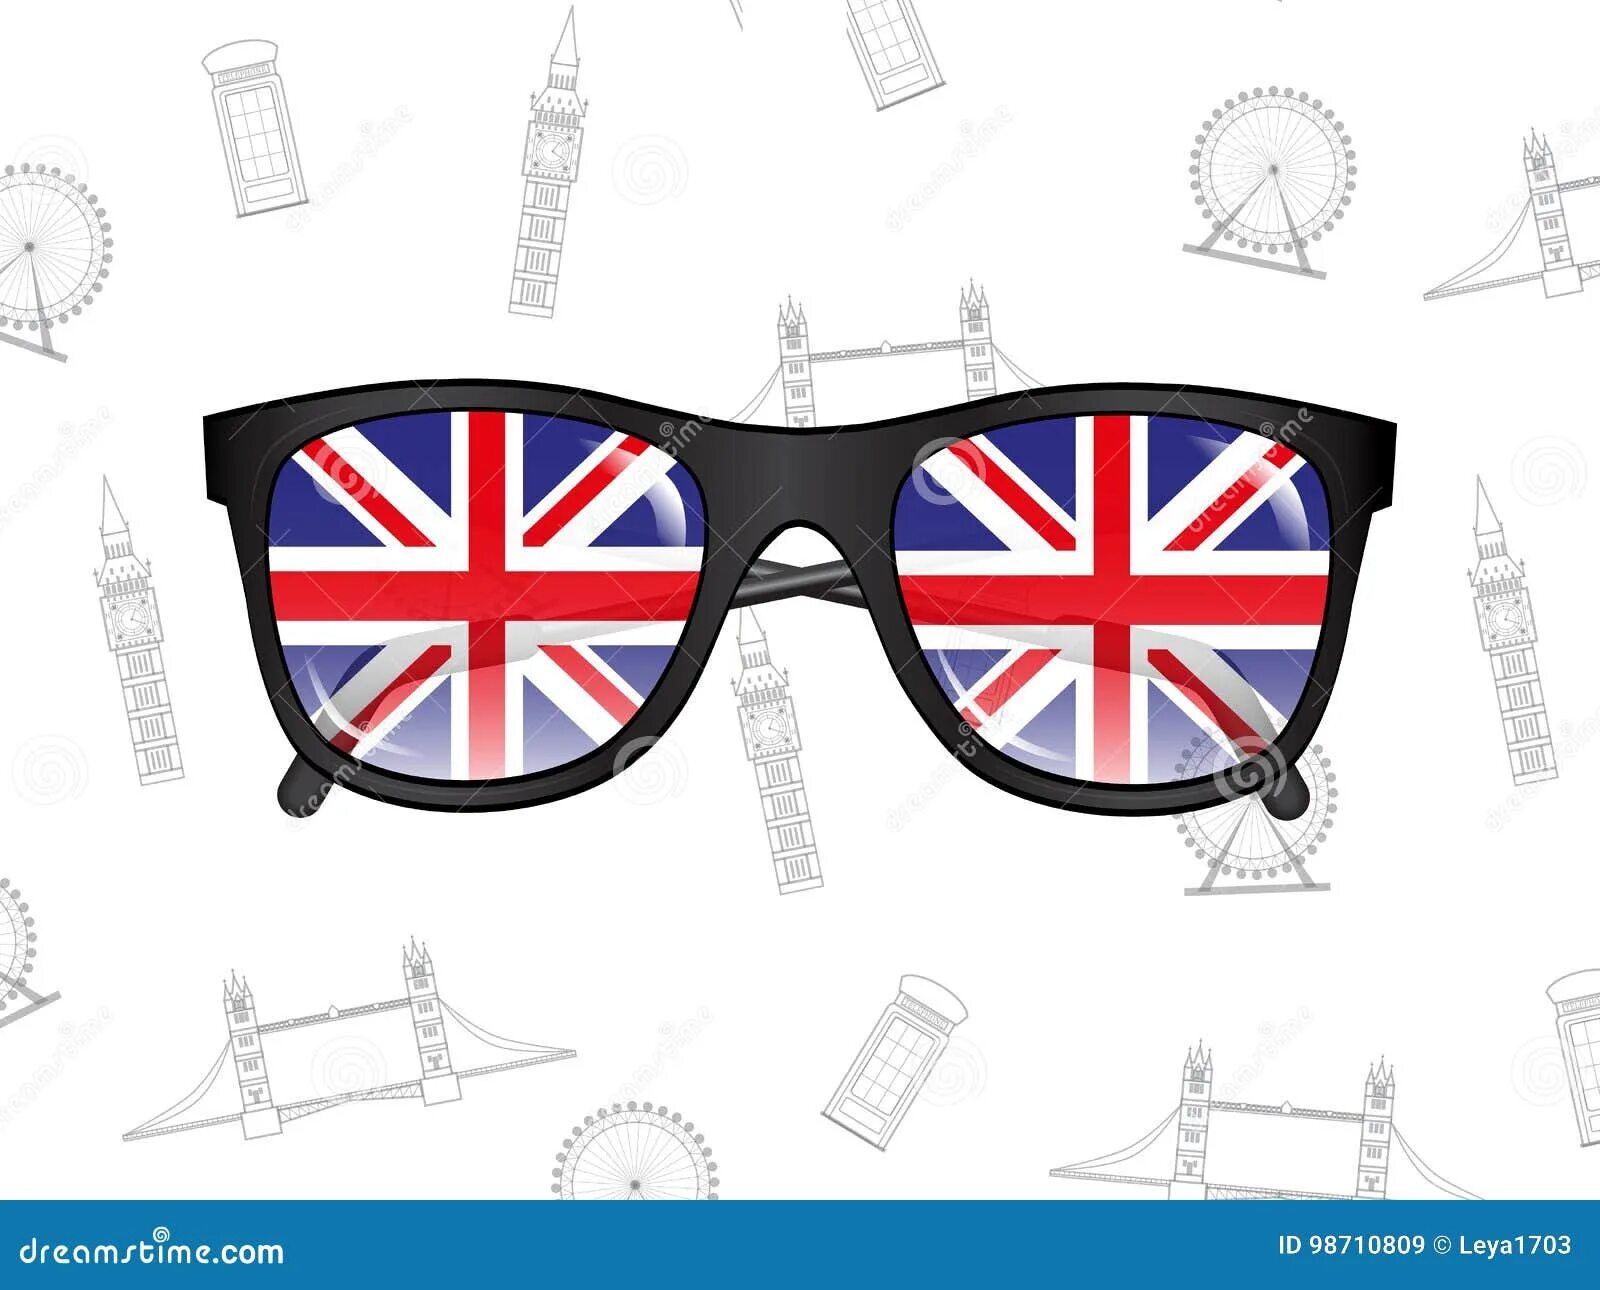 Купи очки на английском. Очки с флагом. Очки с английским флагом. Очки с флагом Великобритании. Очки с американским флагом.